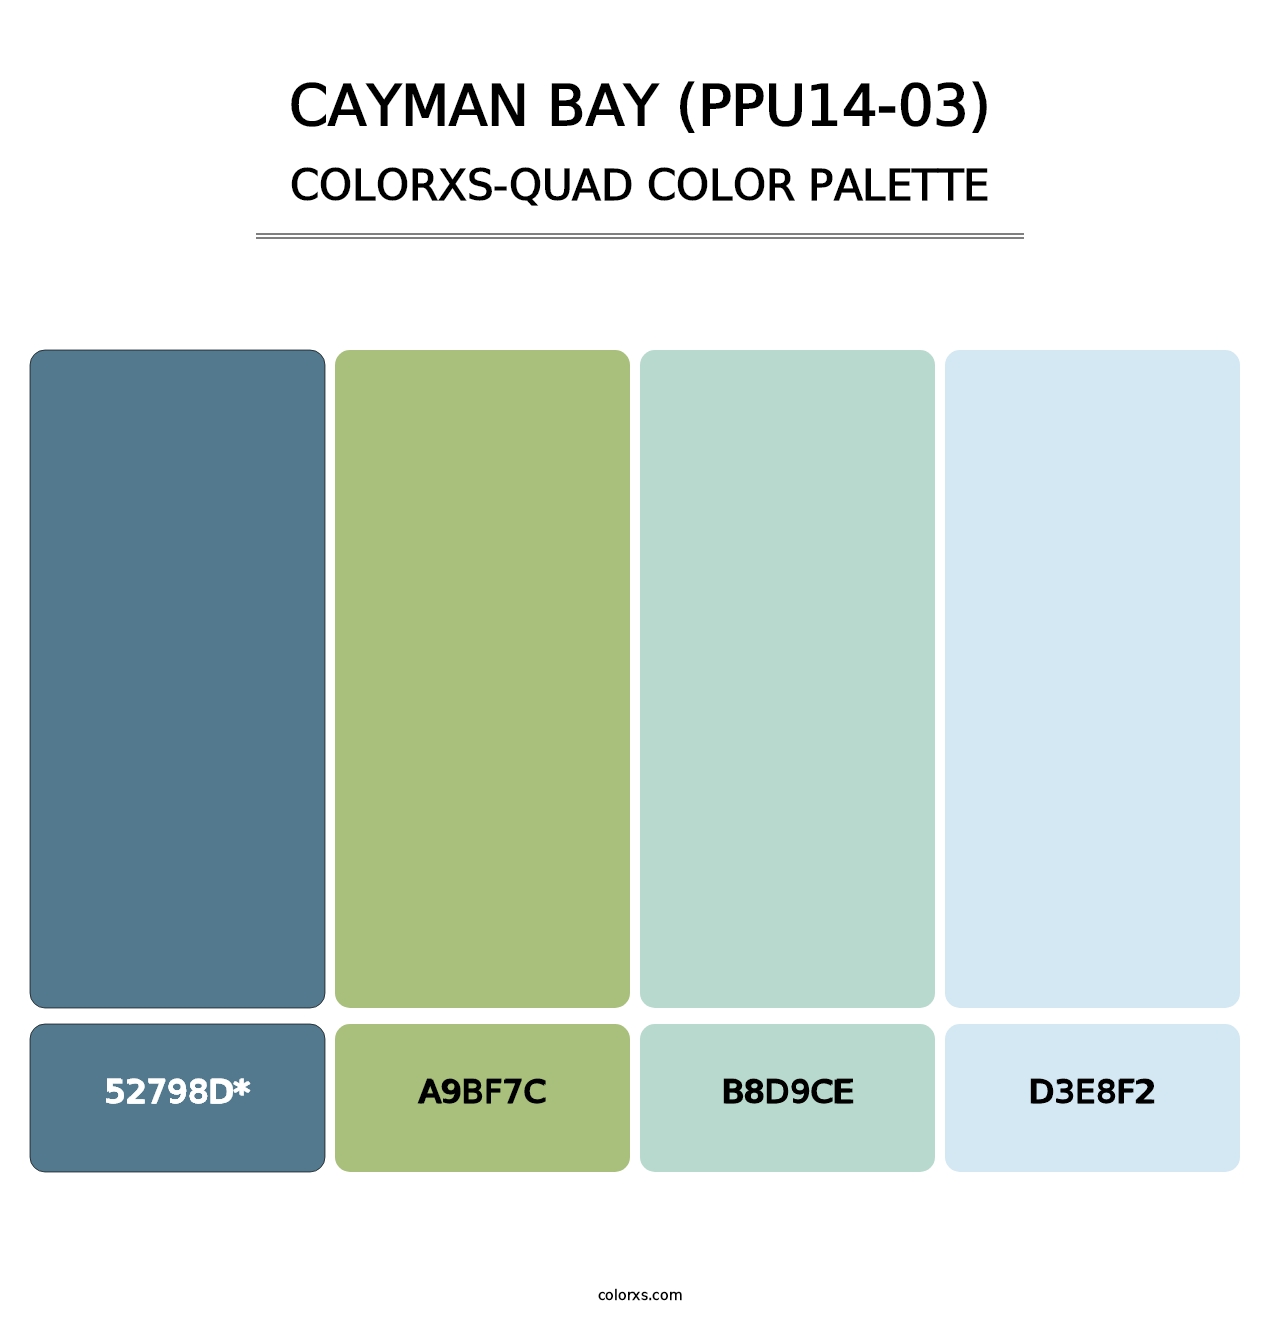 Cayman Bay (PPU14-03) - Colorxs Quad Palette